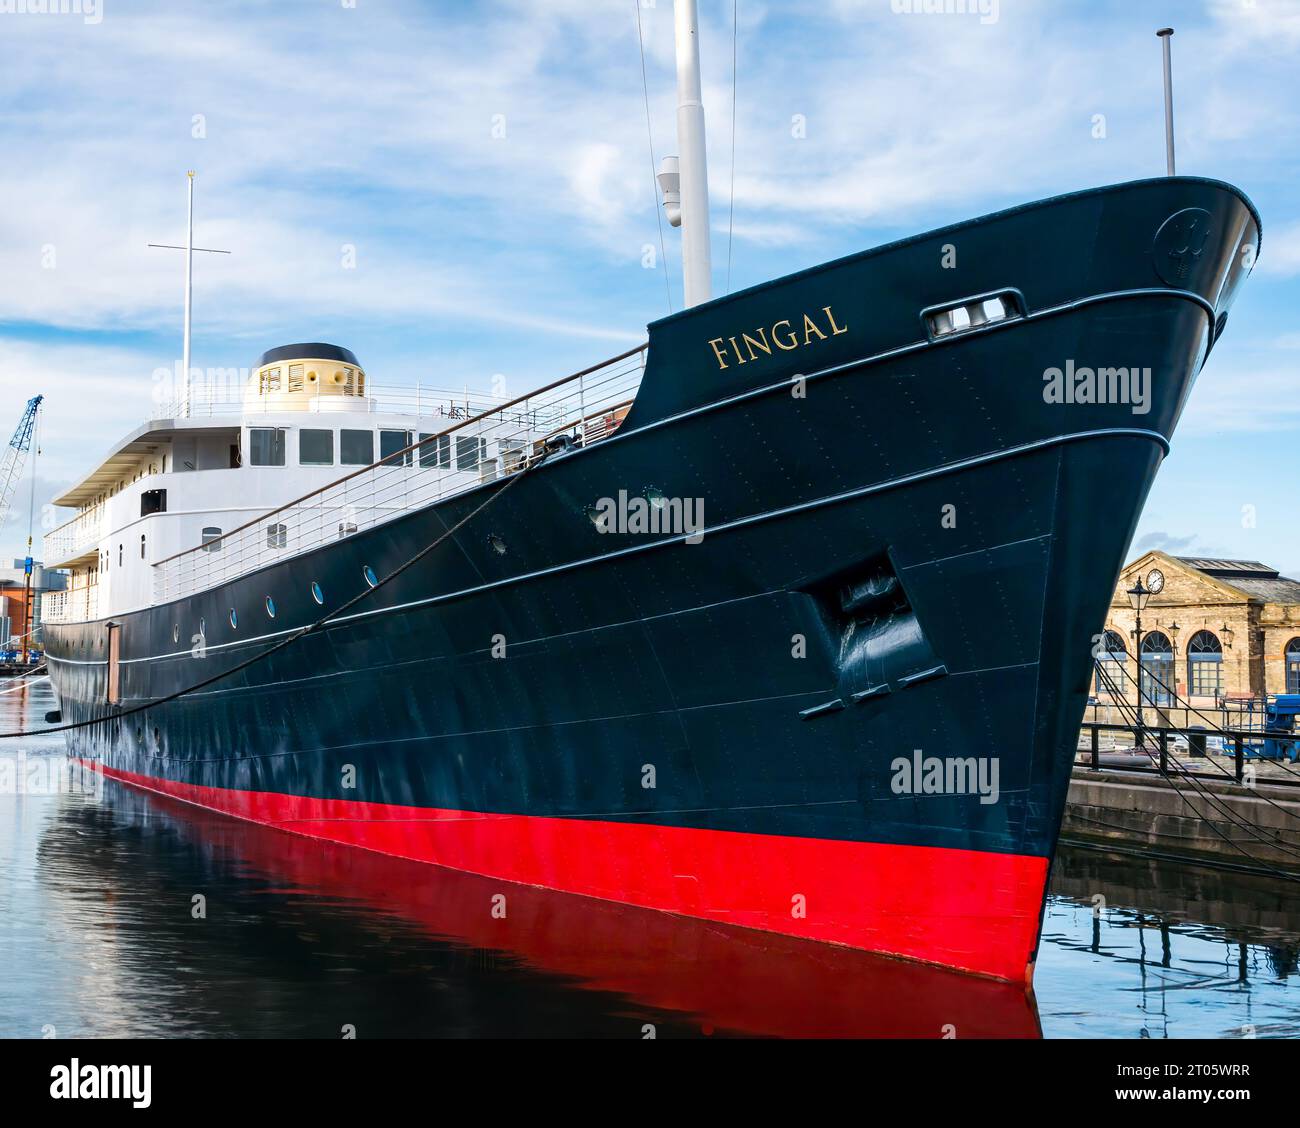 Hôtel de luxe flottant MV Fingal, ancien navire de phare à Alexandra Dock, Leith Harbour, Édimbourg, Écosse, Royaume-Uni Banque D'Images